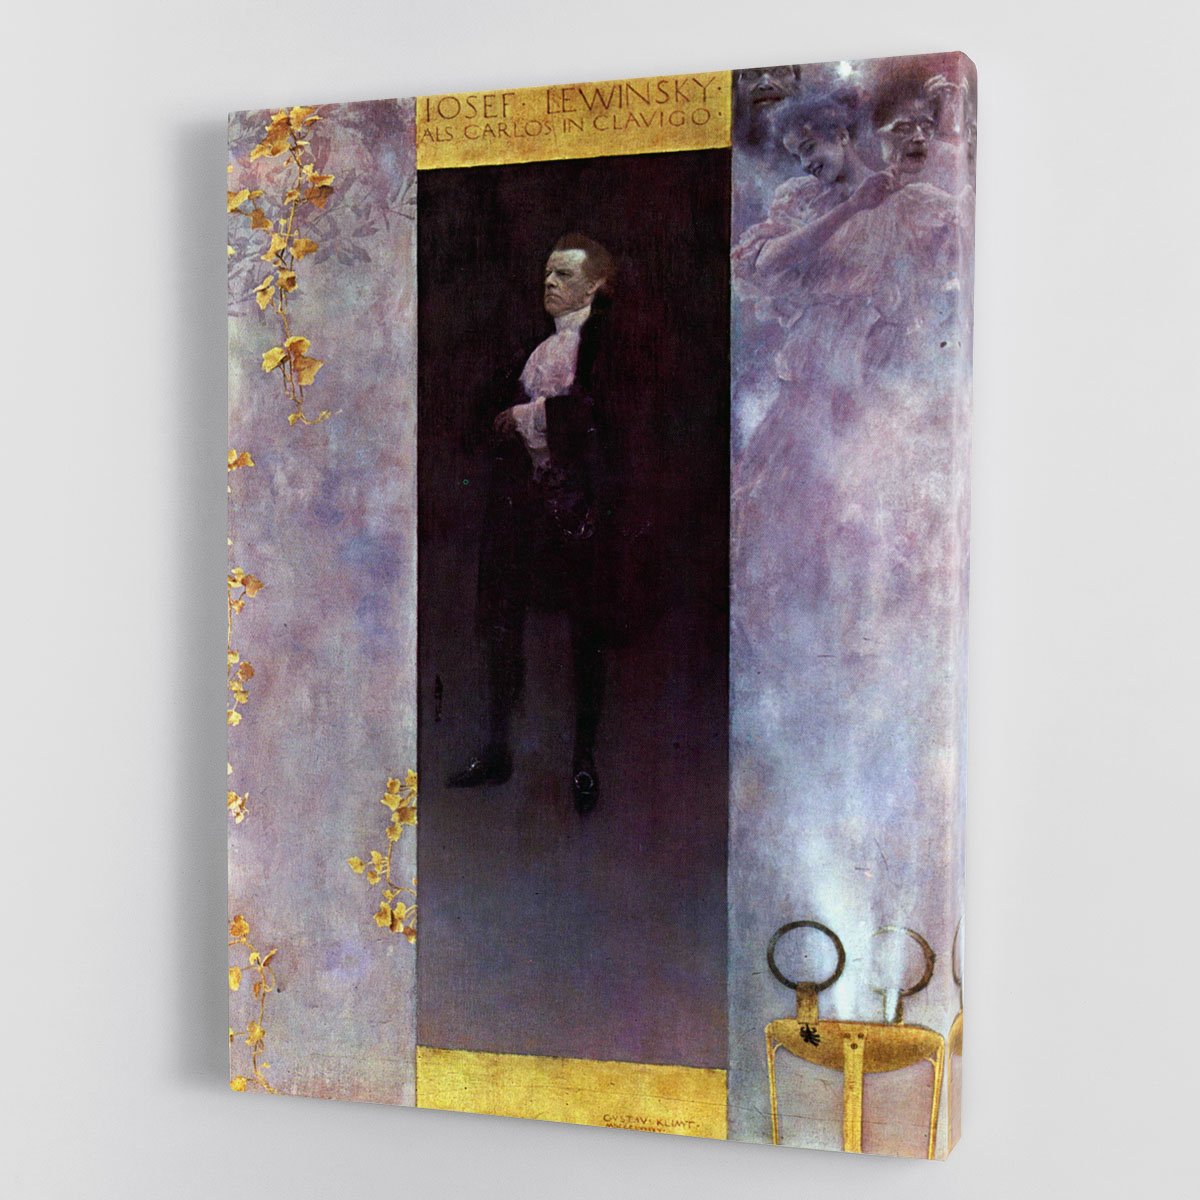 Hofburg actor Josef Lewinsky as Carlos by Klimt Canvas Print or Poster